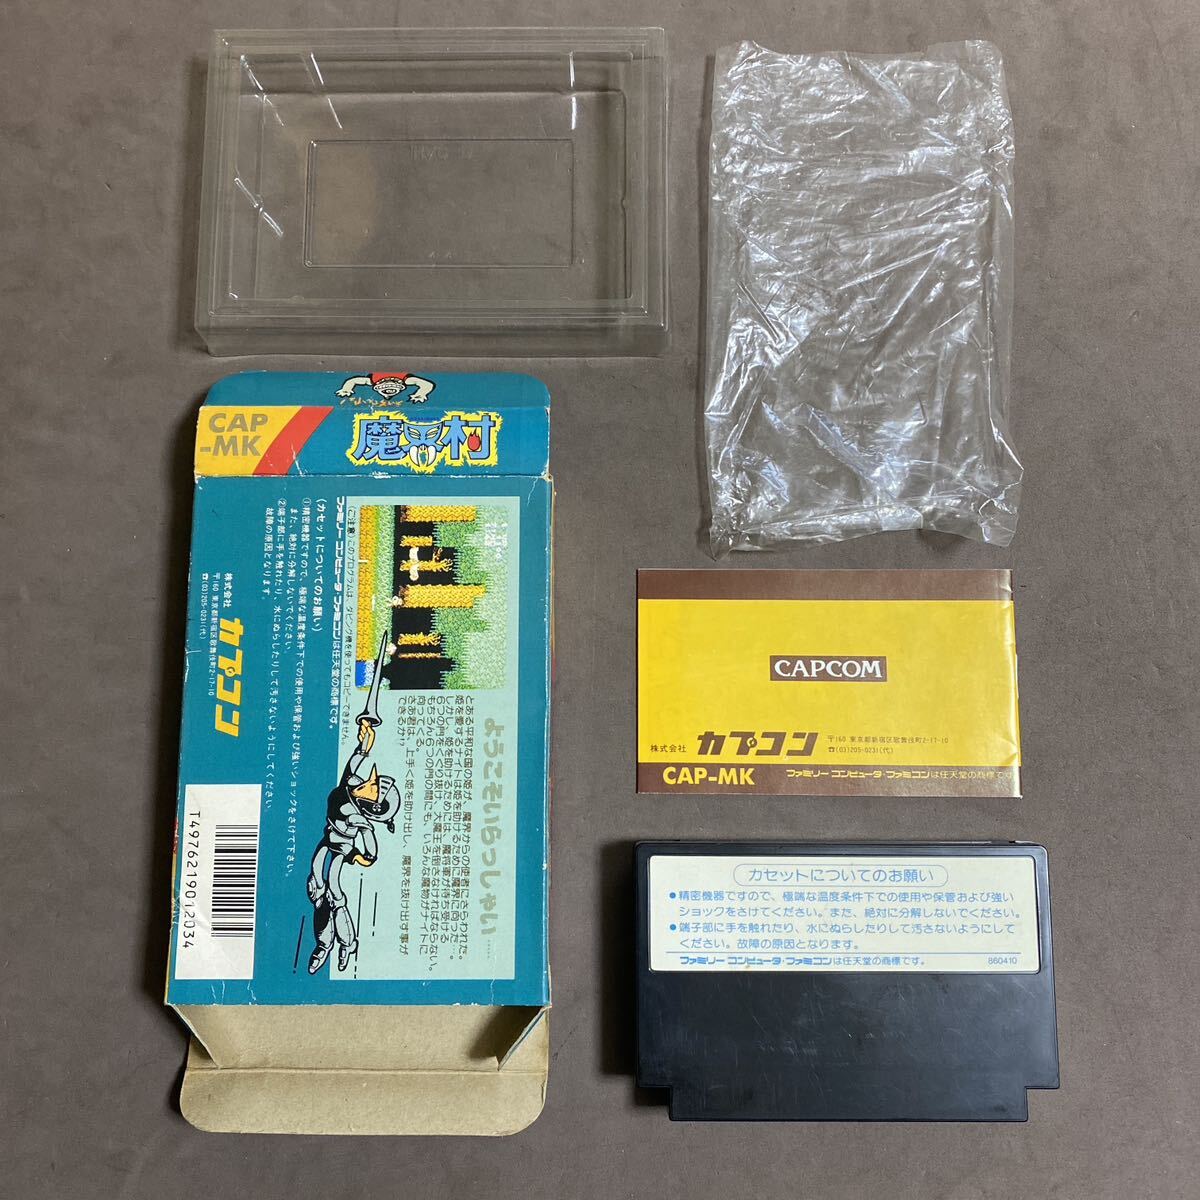  коробка мнение имеется Famicom soft ...